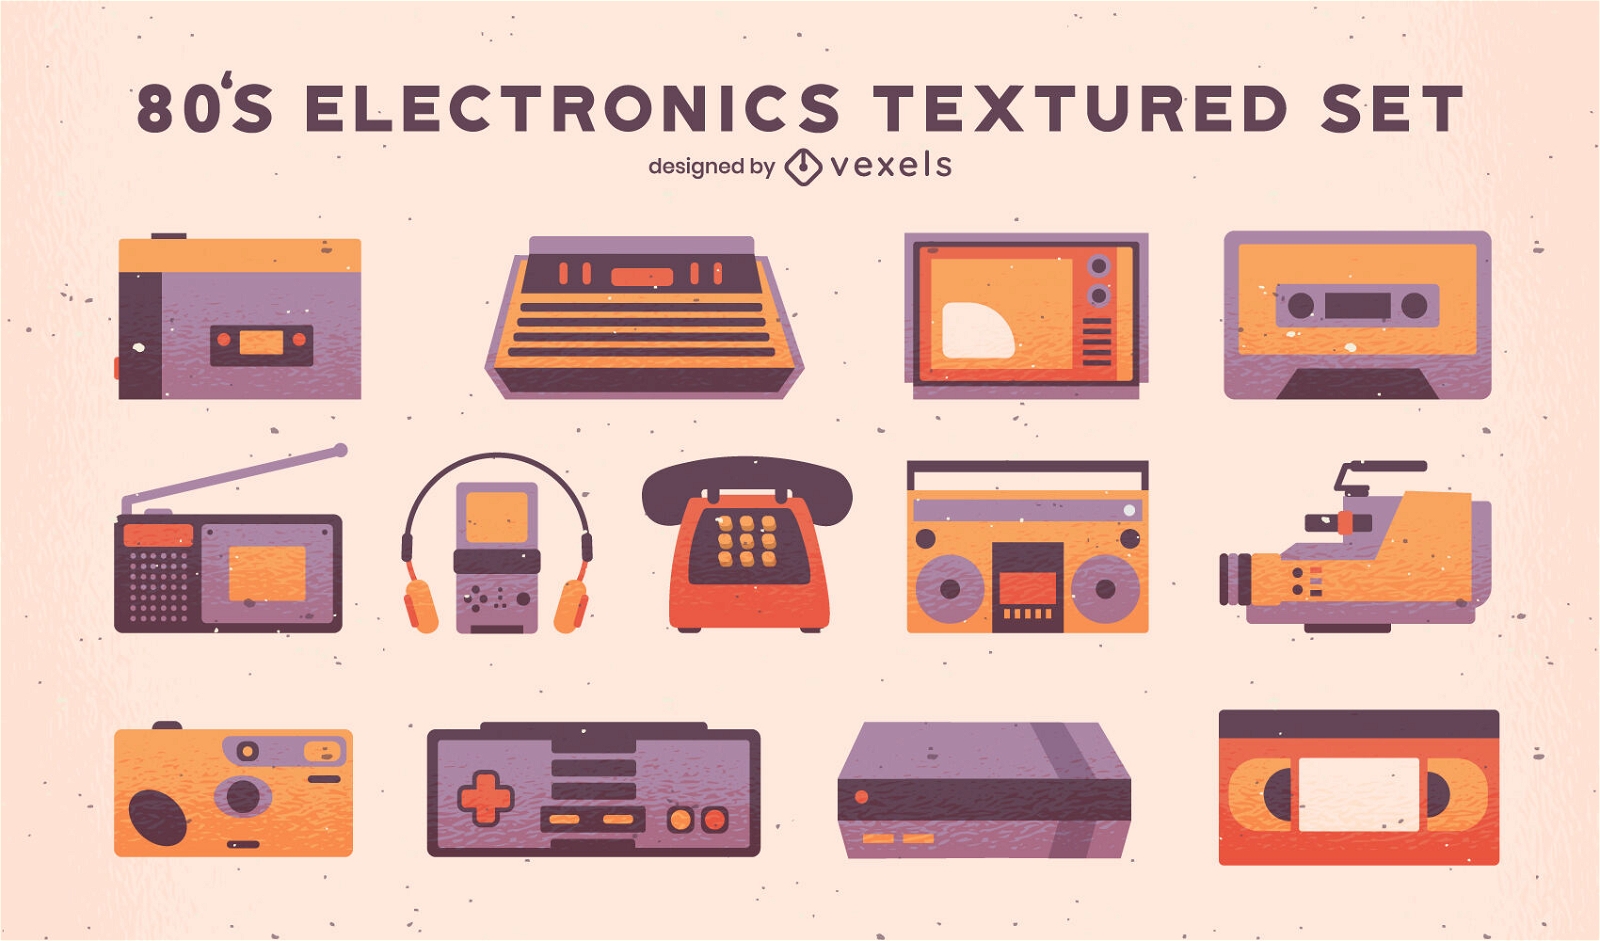 Elementos retro tecnol?gicos texturizados dos anos 80